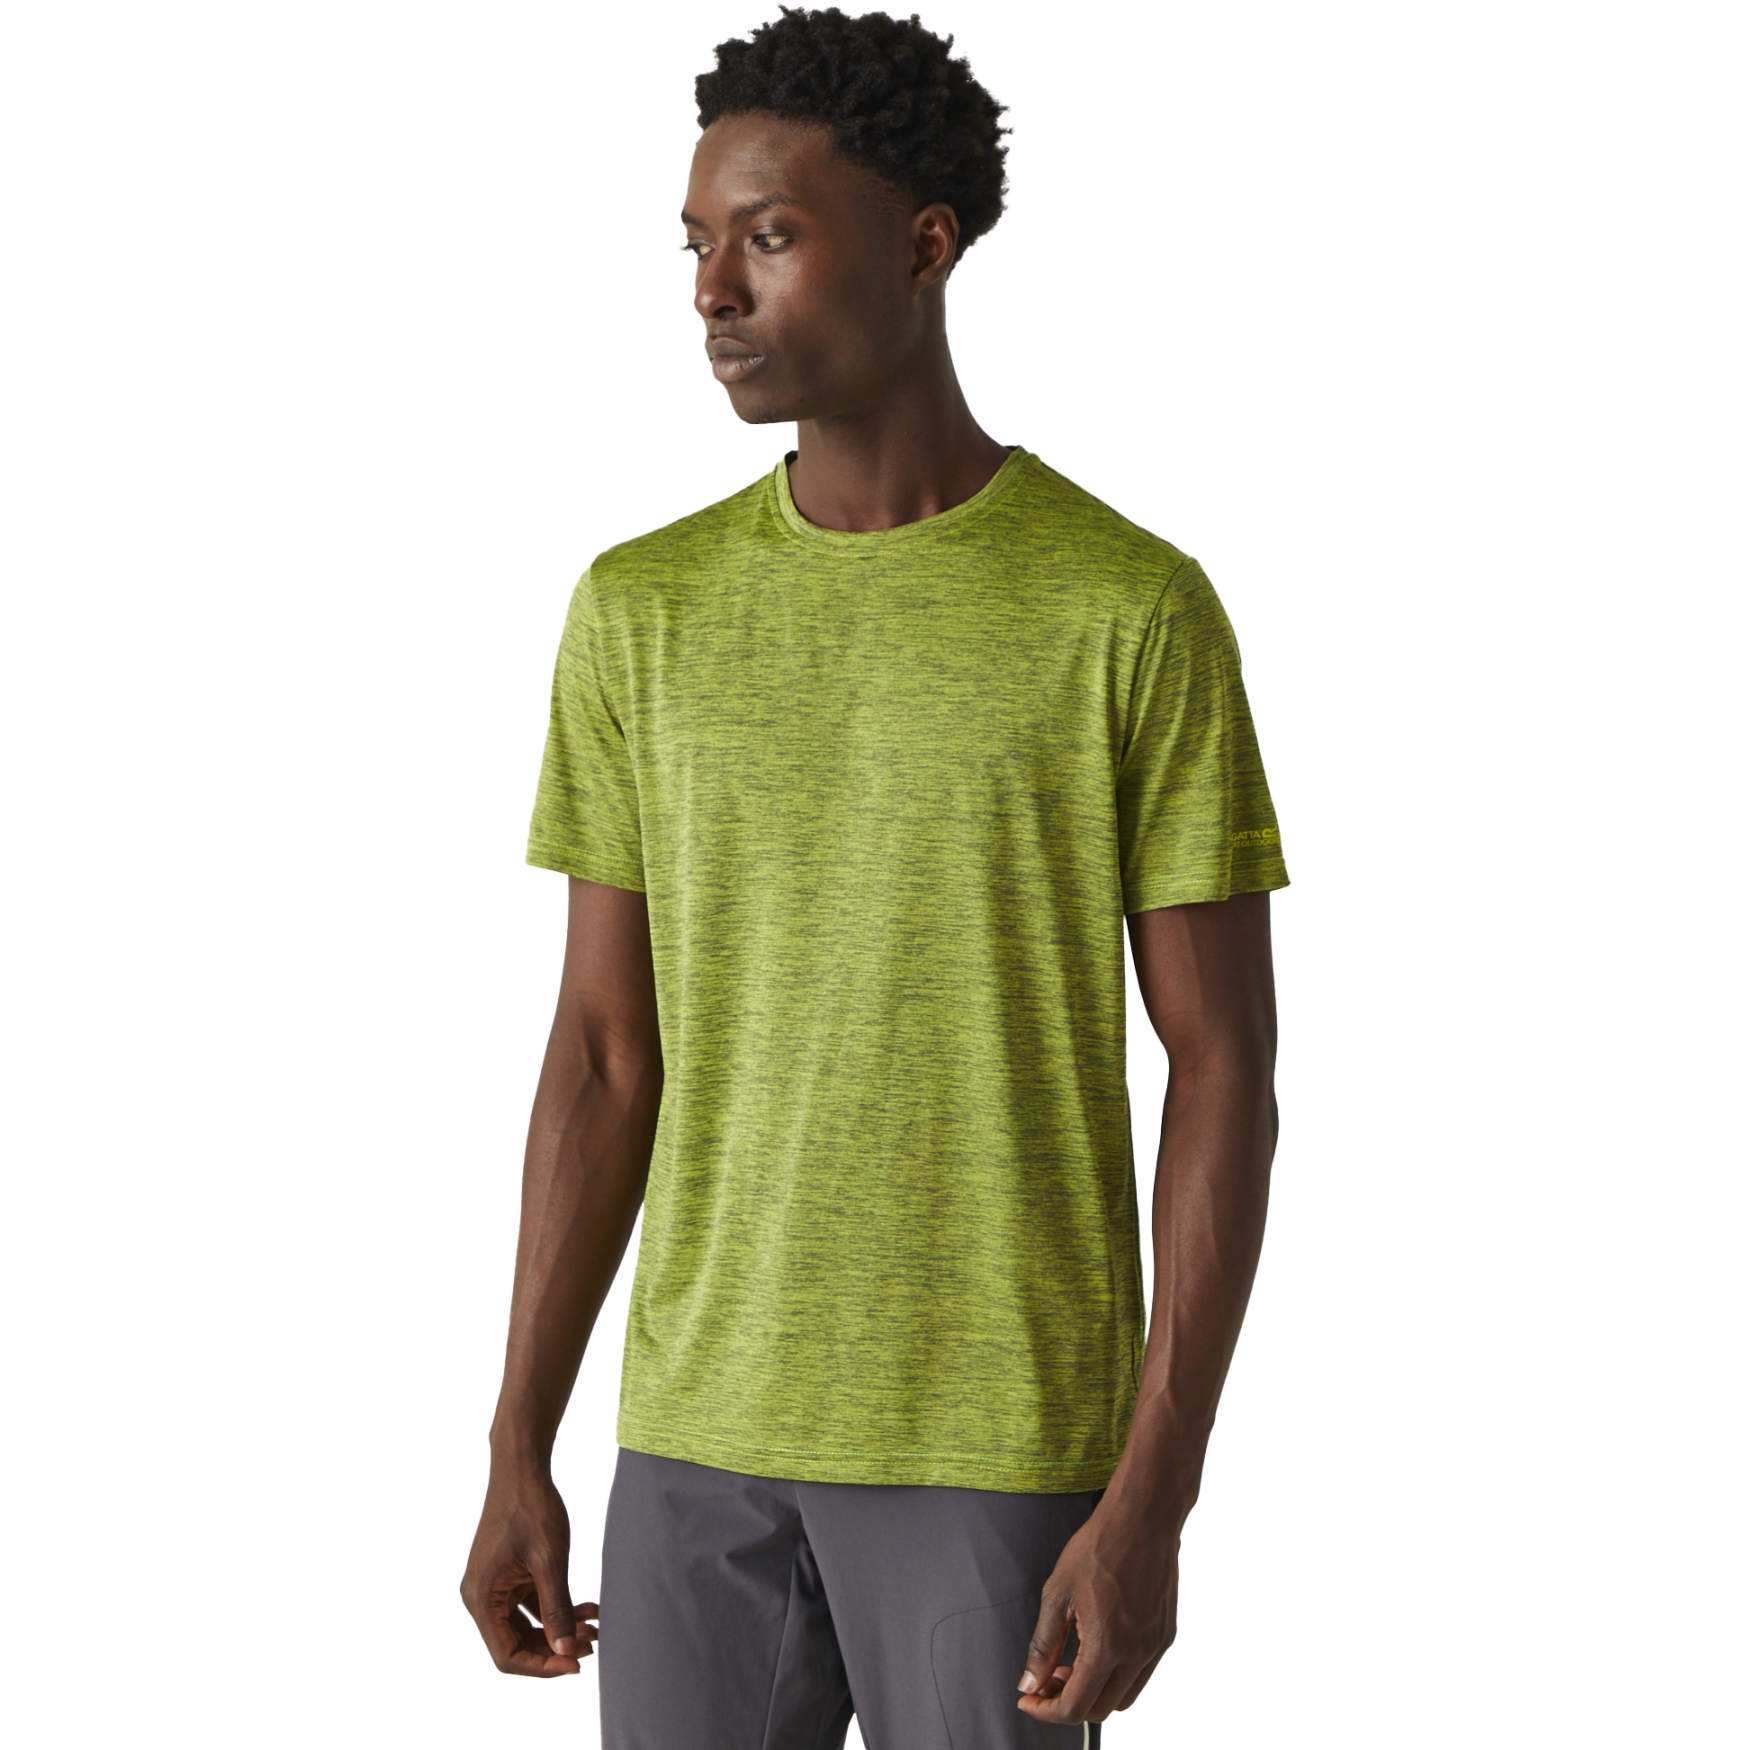 Produktbild von Regatta Fingal Edition T-Shirt Herren - Citron Lime AAJ